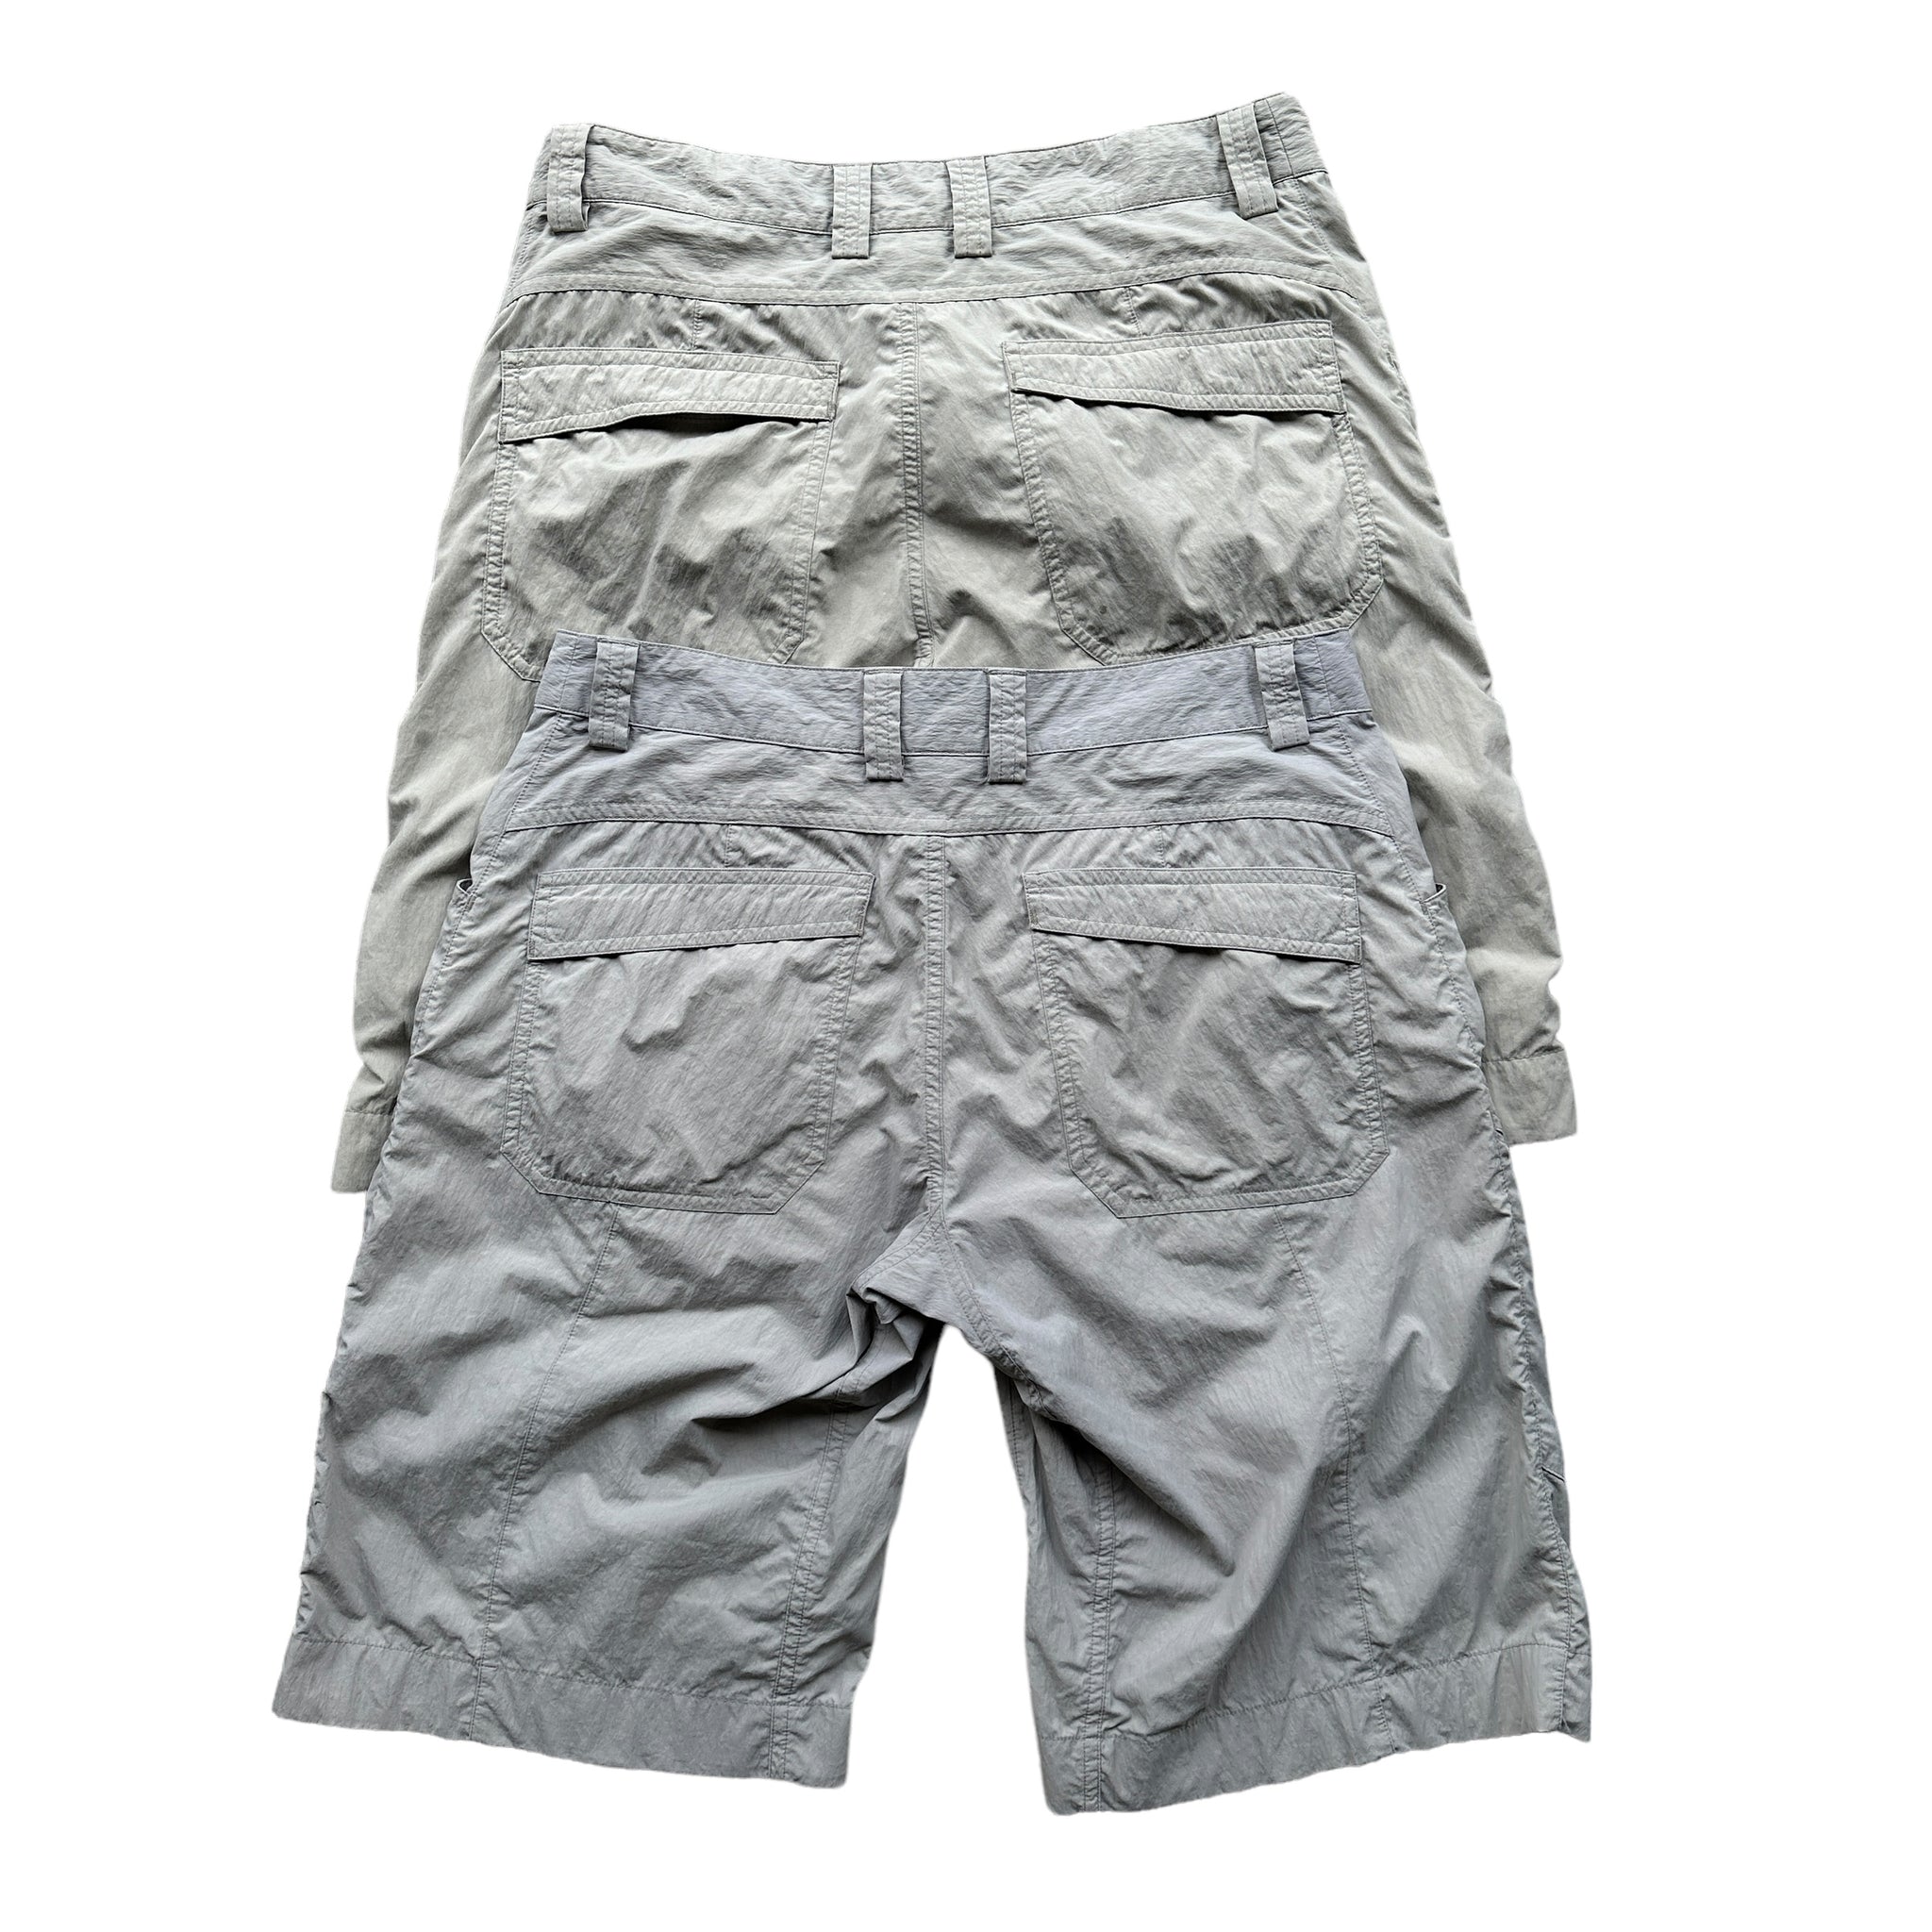 Arc’teryx shorts sz 32